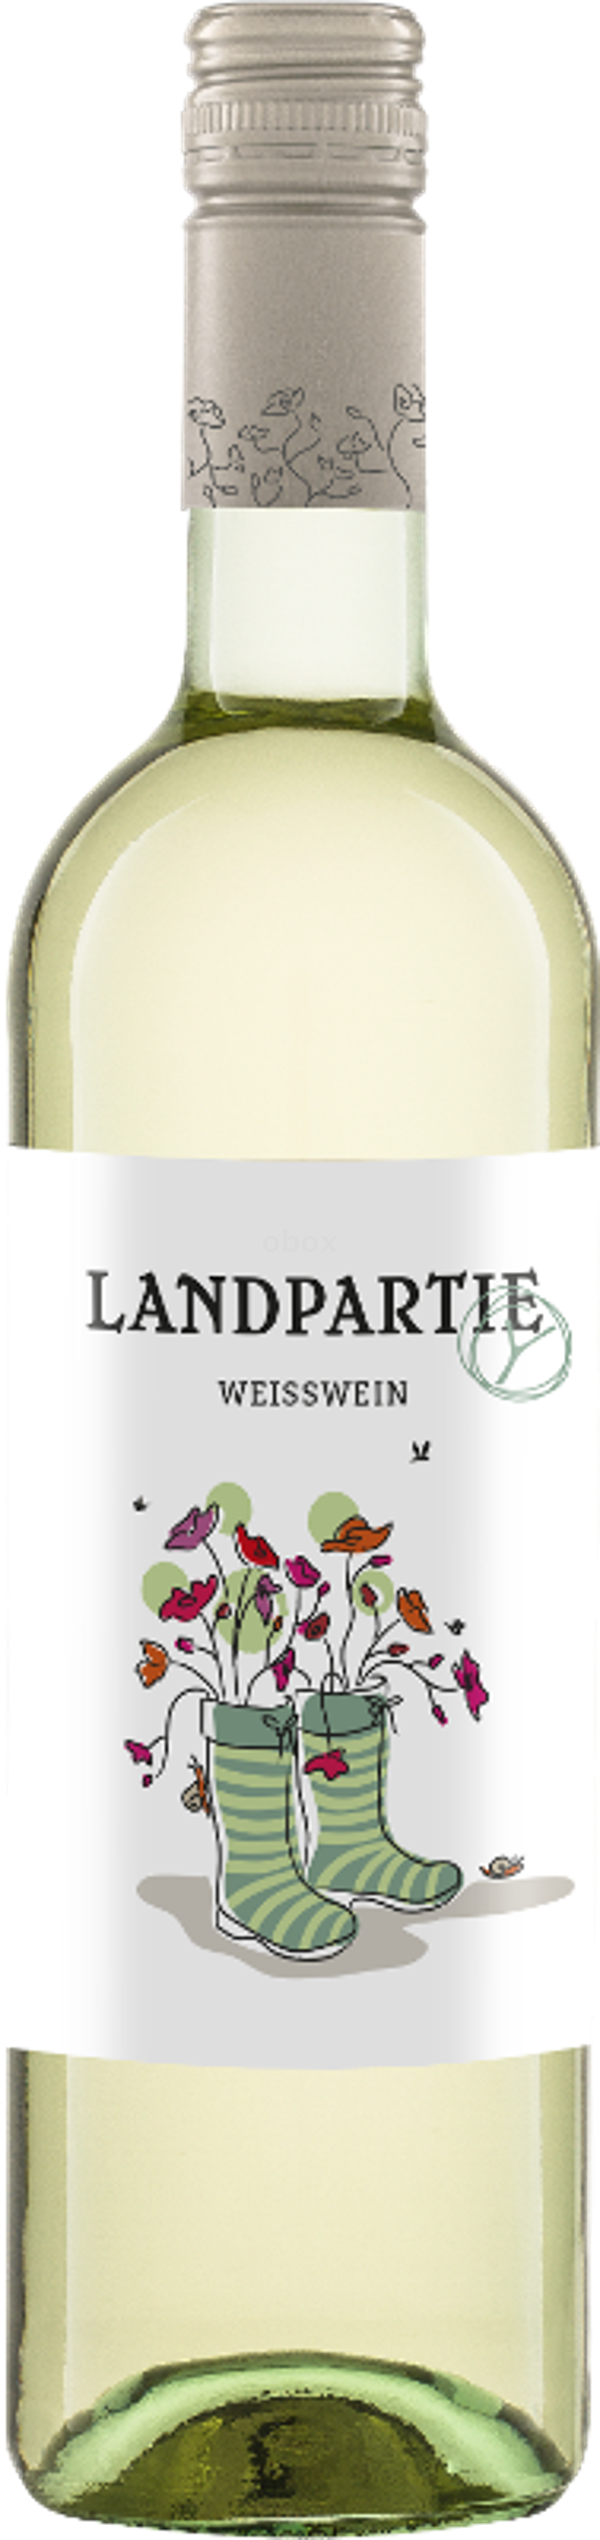 Produktfoto zu Landpartie Weißwein 0,75L